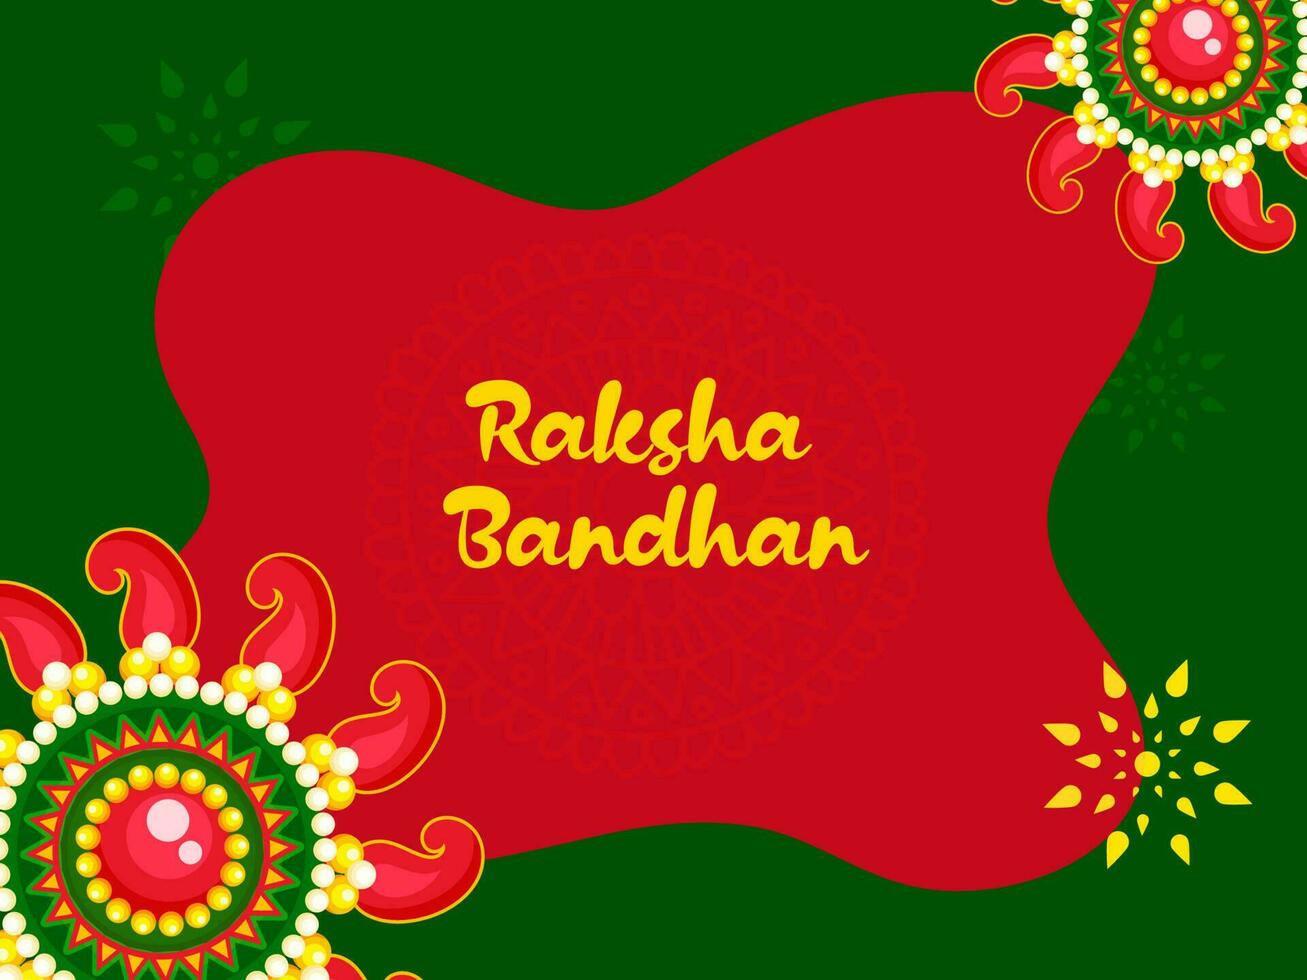 Raksha bandhan concetto con bellissimo rakhis o floreale su rosso e verde sfondo. vettore